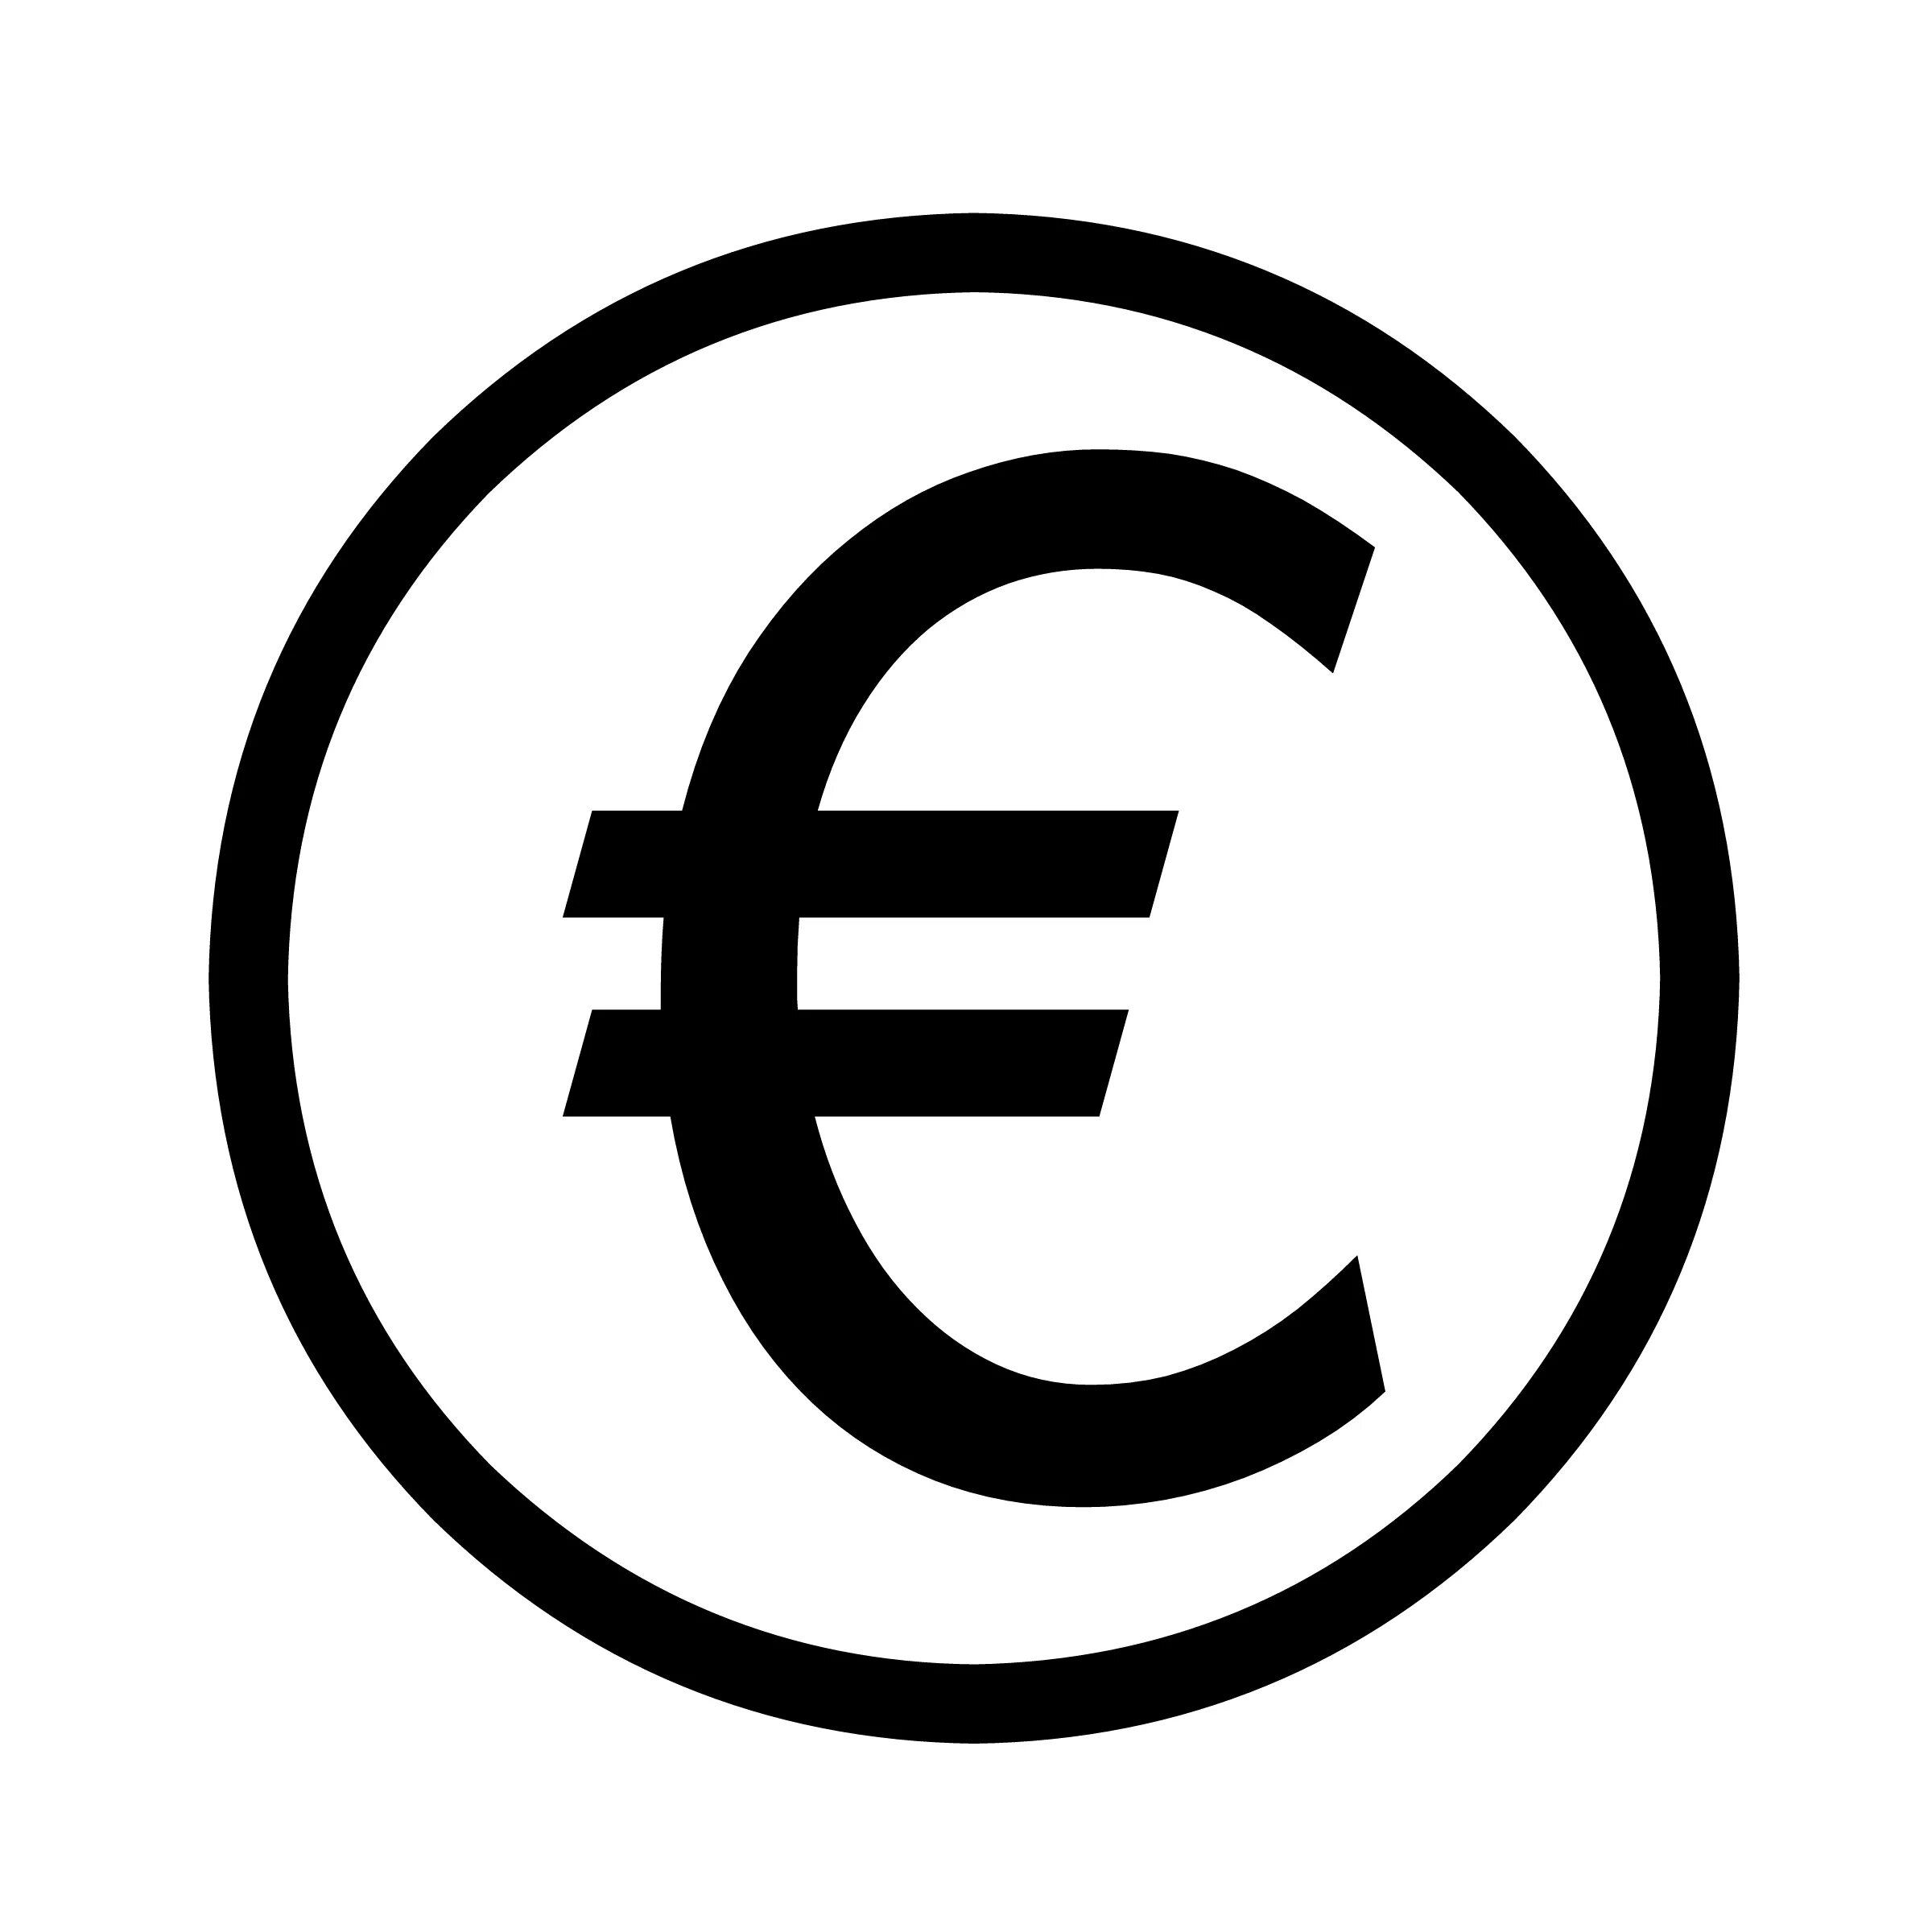 Знак евро. Символ евро. Значки валют. Евро значок валюты. Знаки грошей